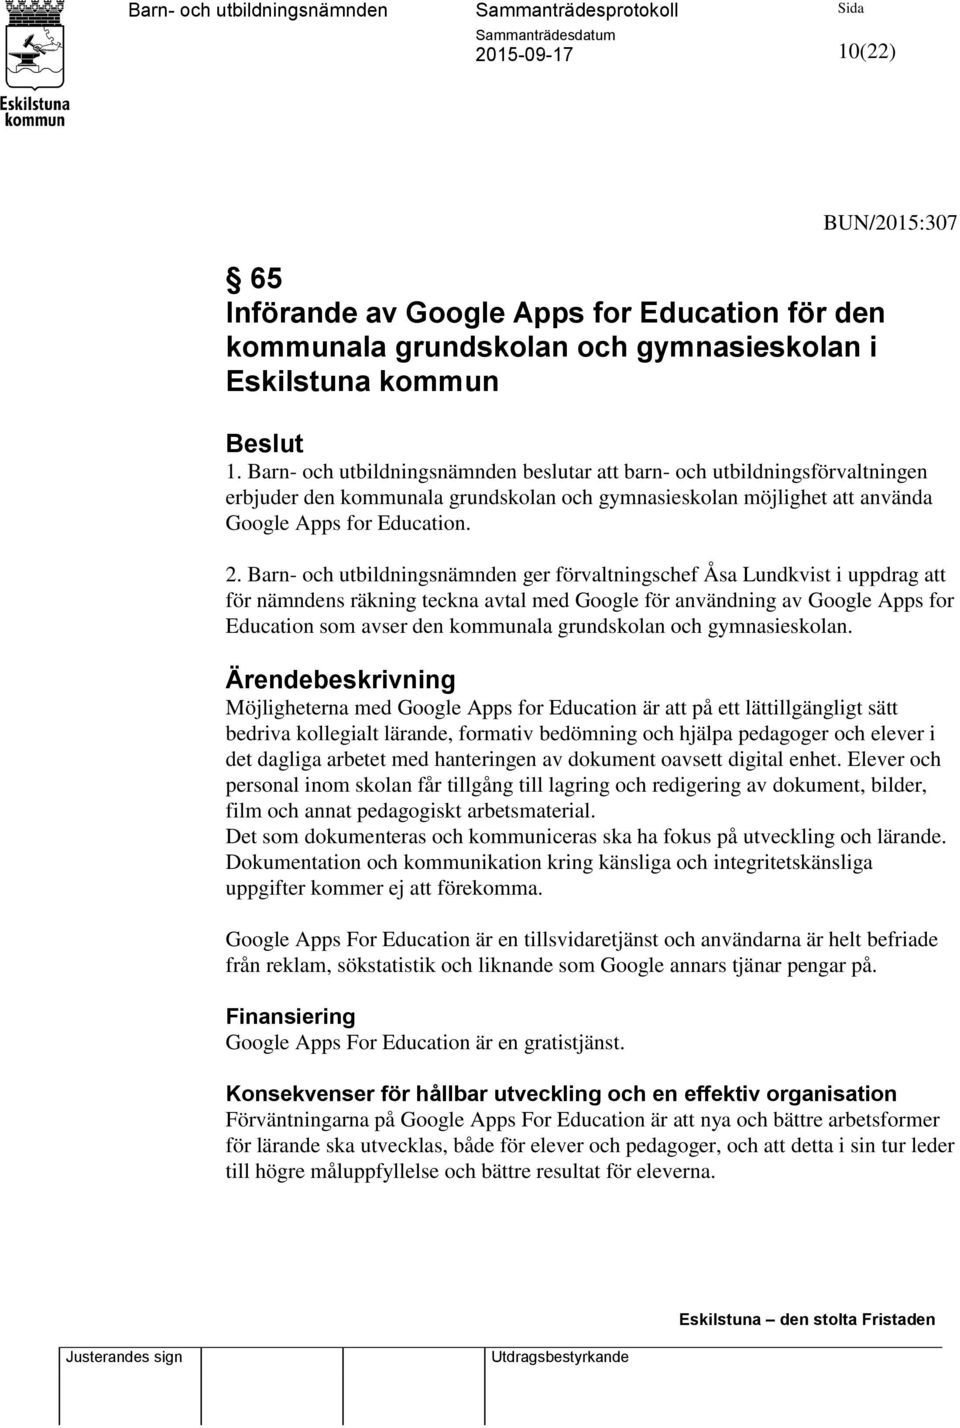 Barn- och utbildningsnämnden ger förvaltningschef Åsa Lundkvist i uppdrag att för nämndens räkning teckna avtal med Google för användning av Google Apps for Education som avser den kommunala